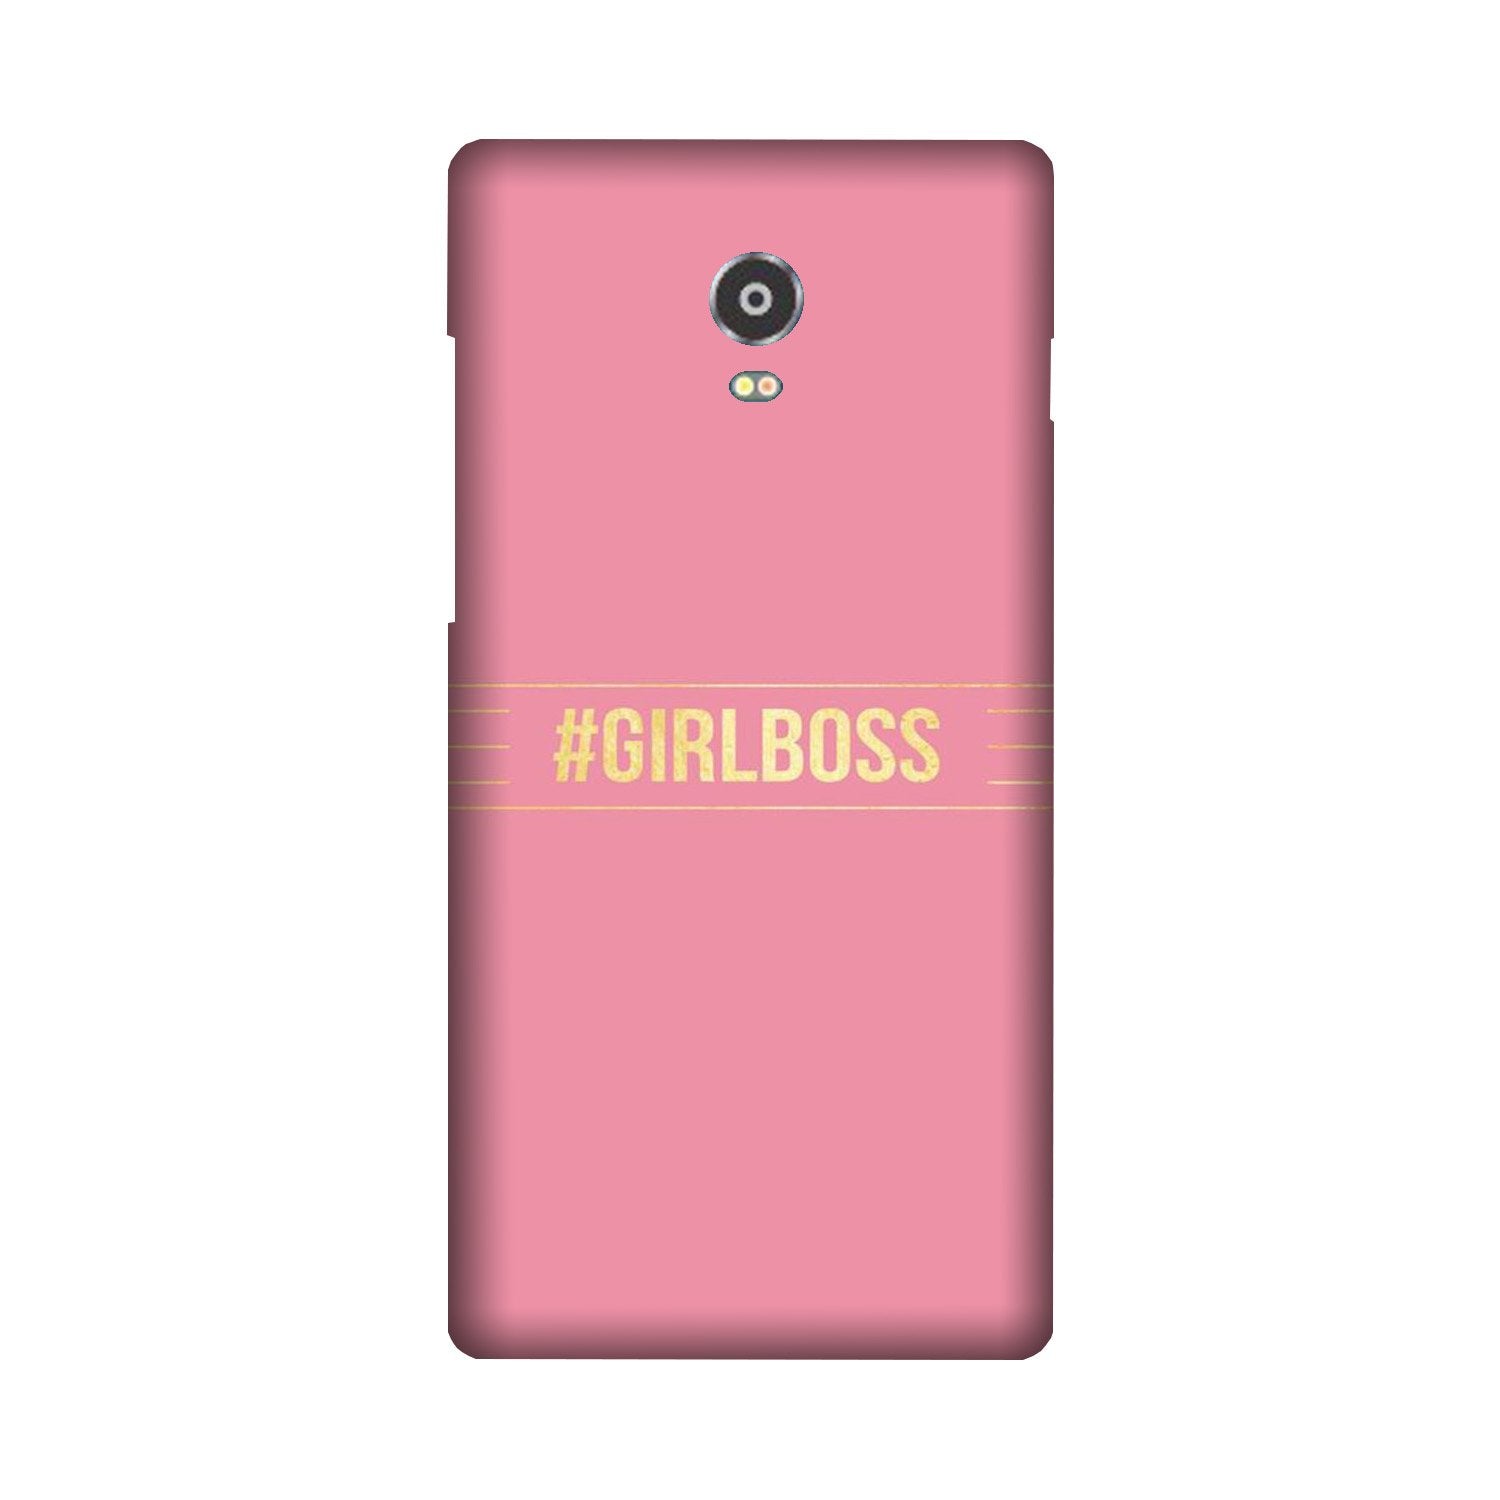 Girl Boss Pink Case for Lenovo Vibe P1 (Design No. 263)